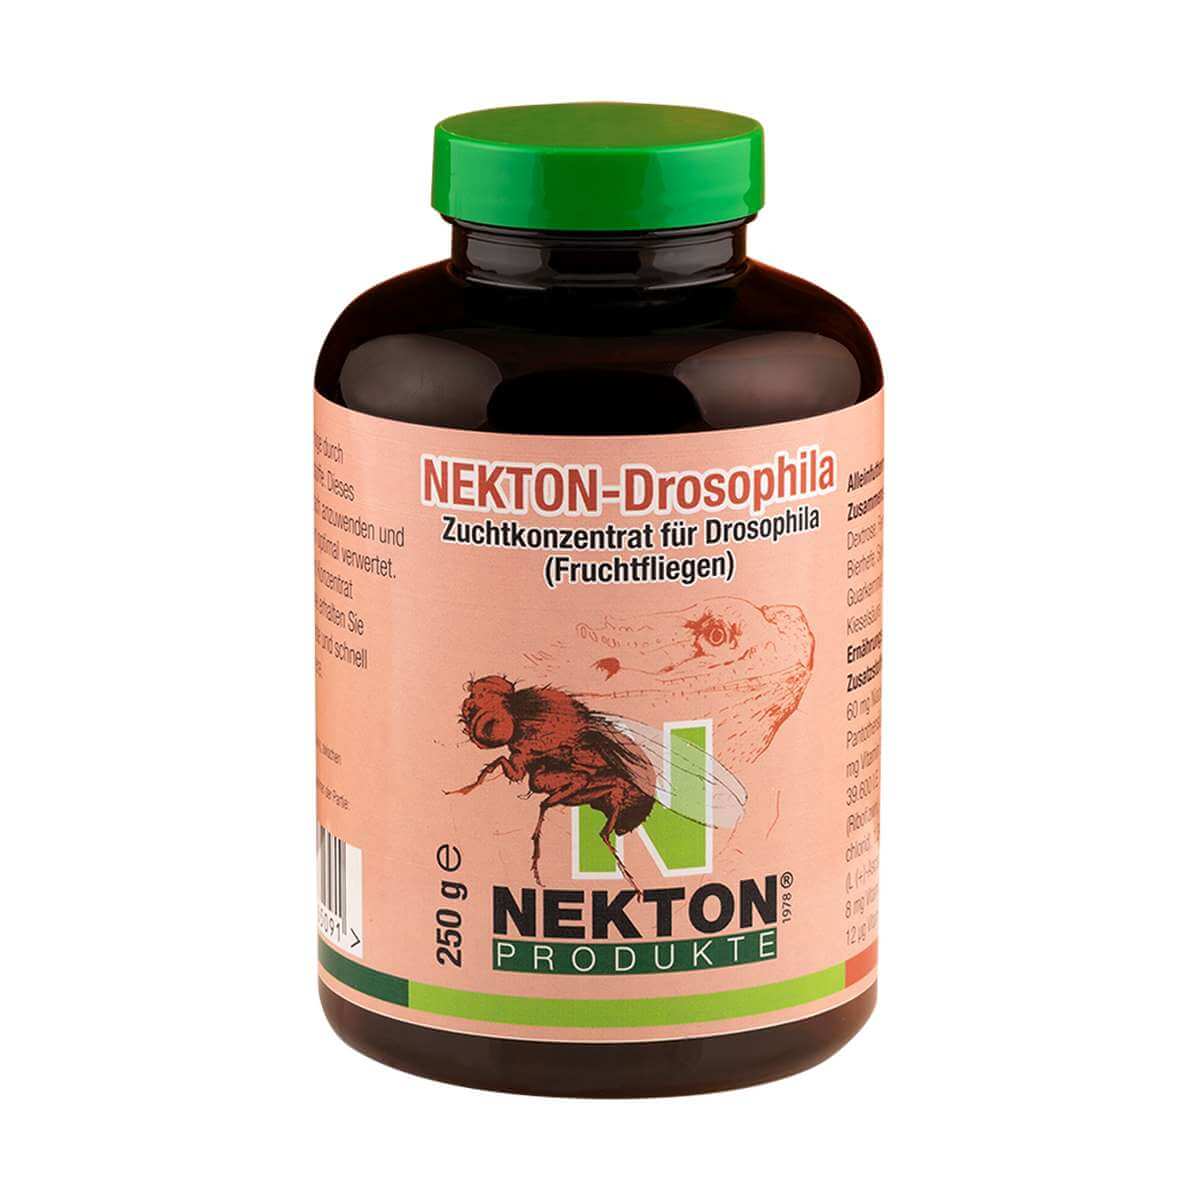 

Концентрат для разведения плодовых мушек Nekton-Drosophila, 250 г